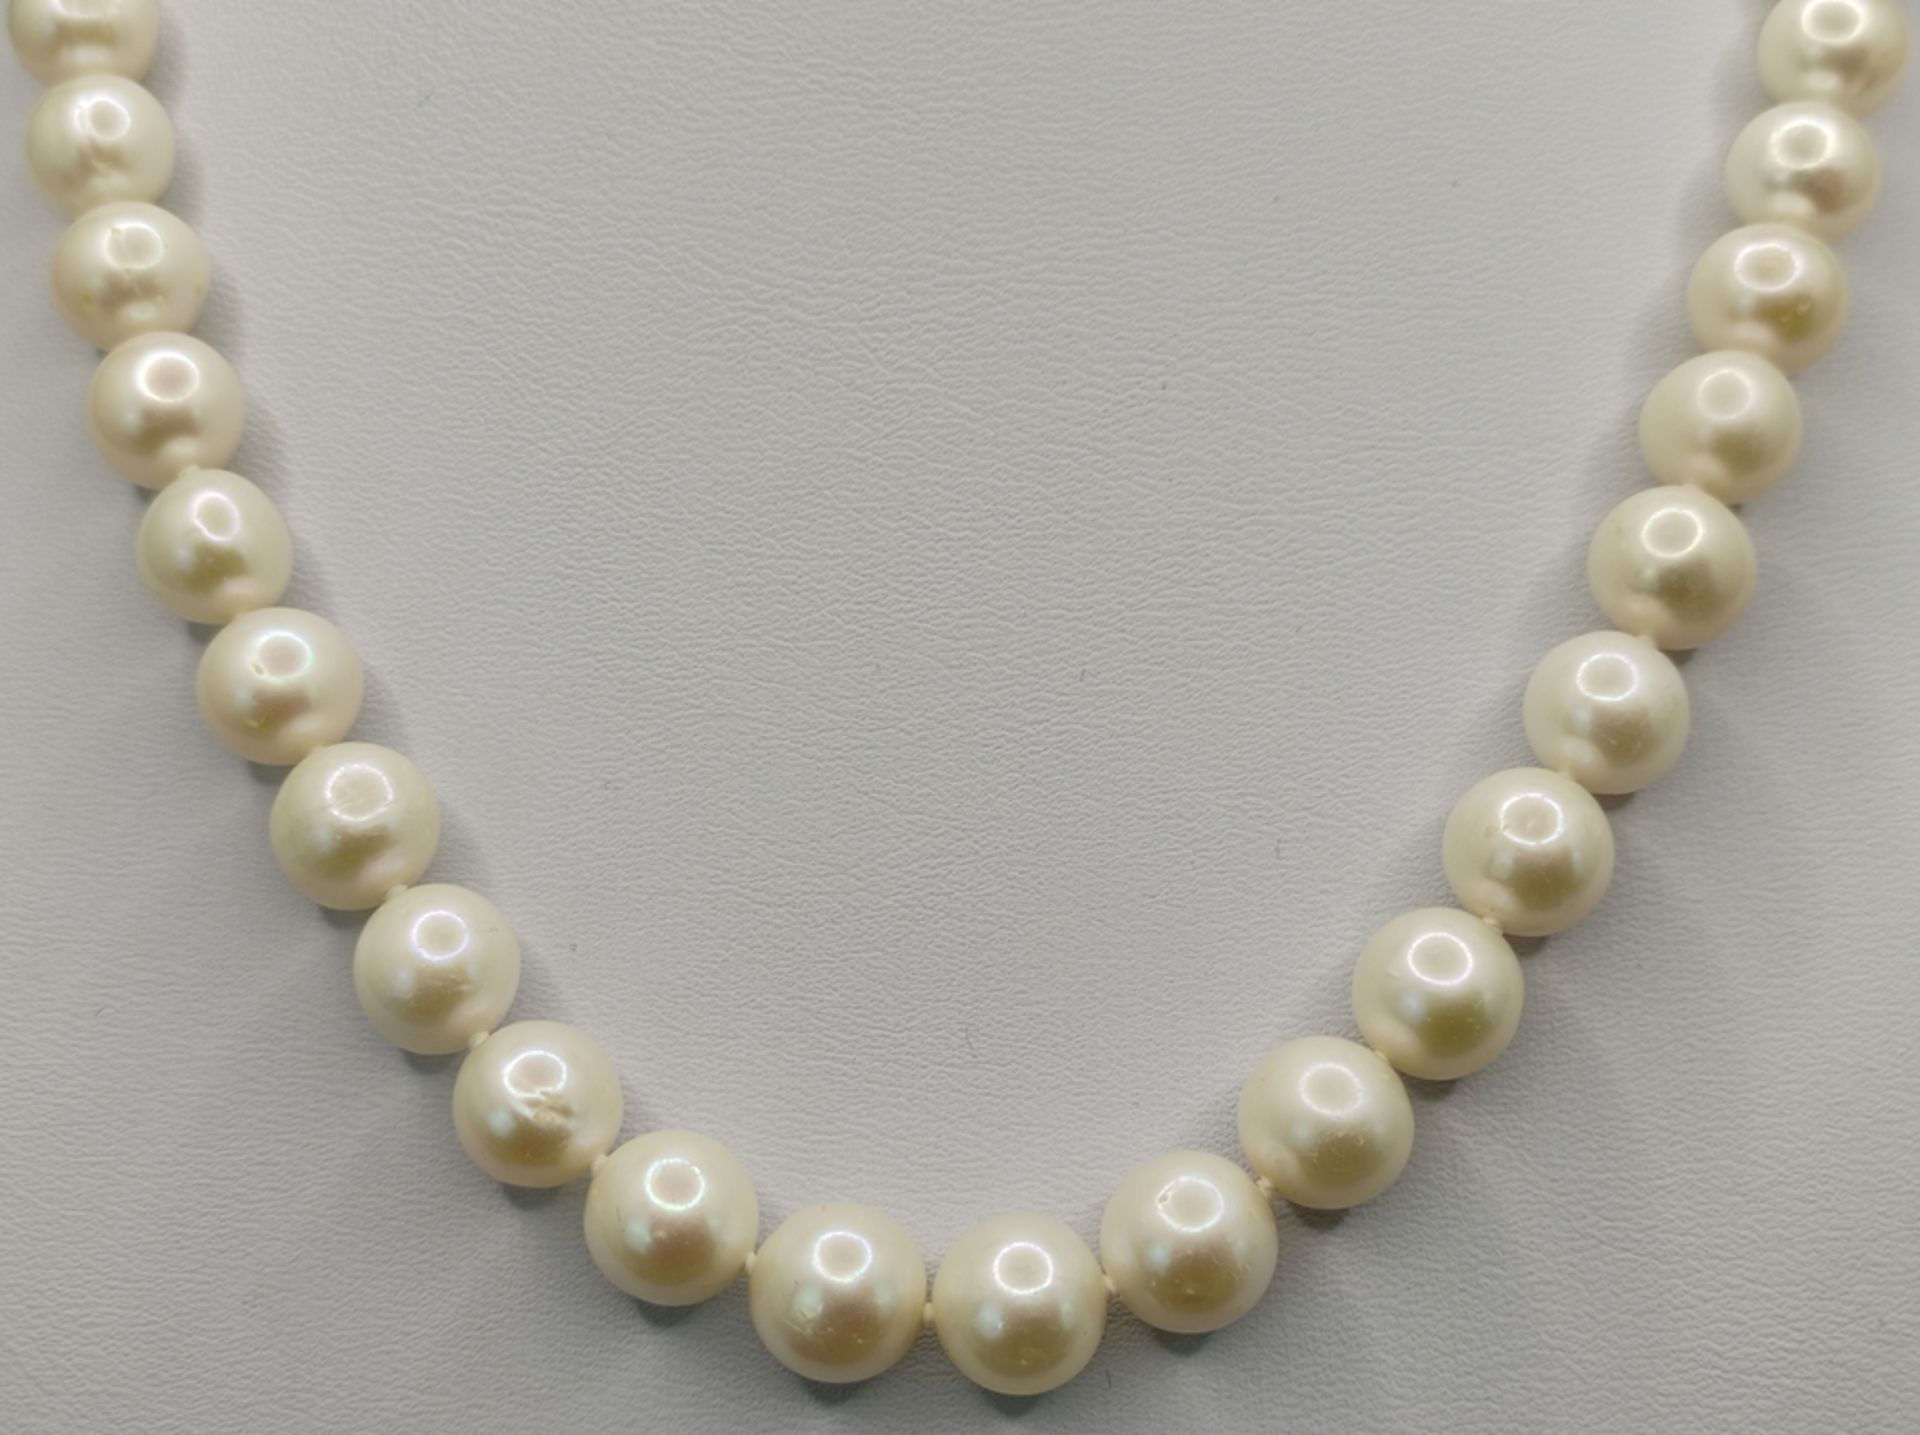 Perlenset, bestehend aus Armband (Länge 20cm) und Kette (Läge 46cm), je mit Magnetverschluss, vergo - Bild 2 aus 6